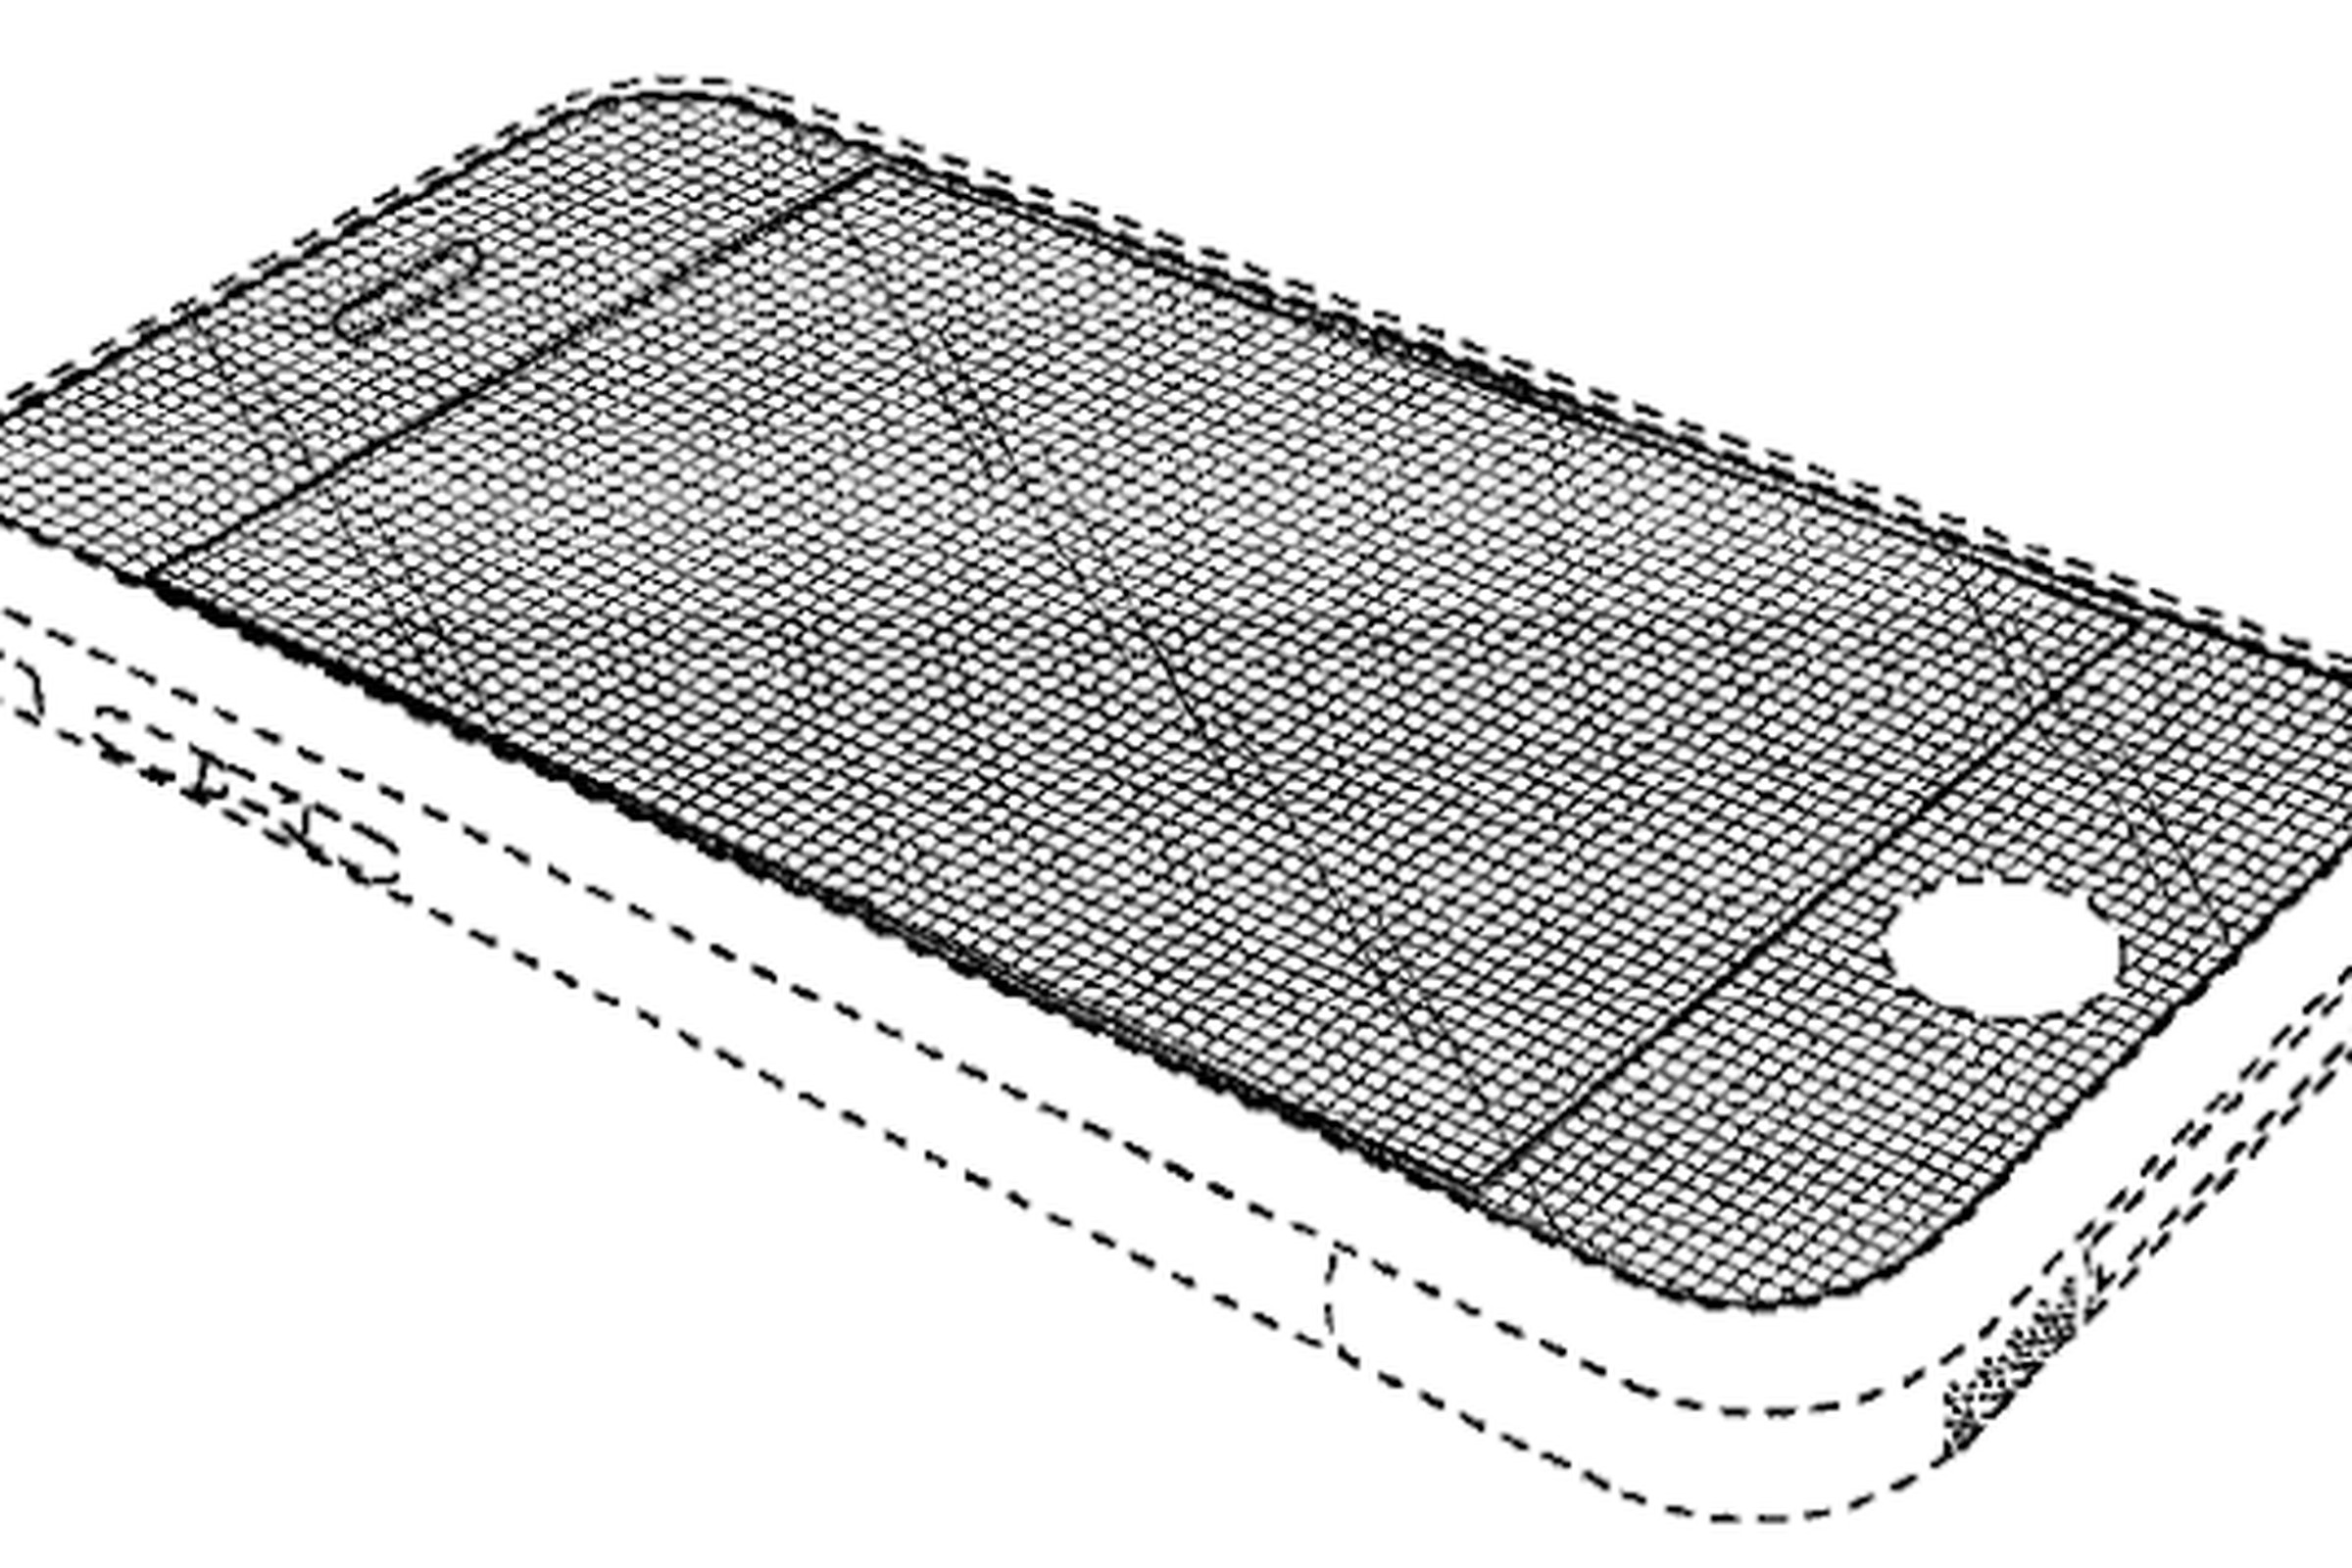 iPhone design patent image